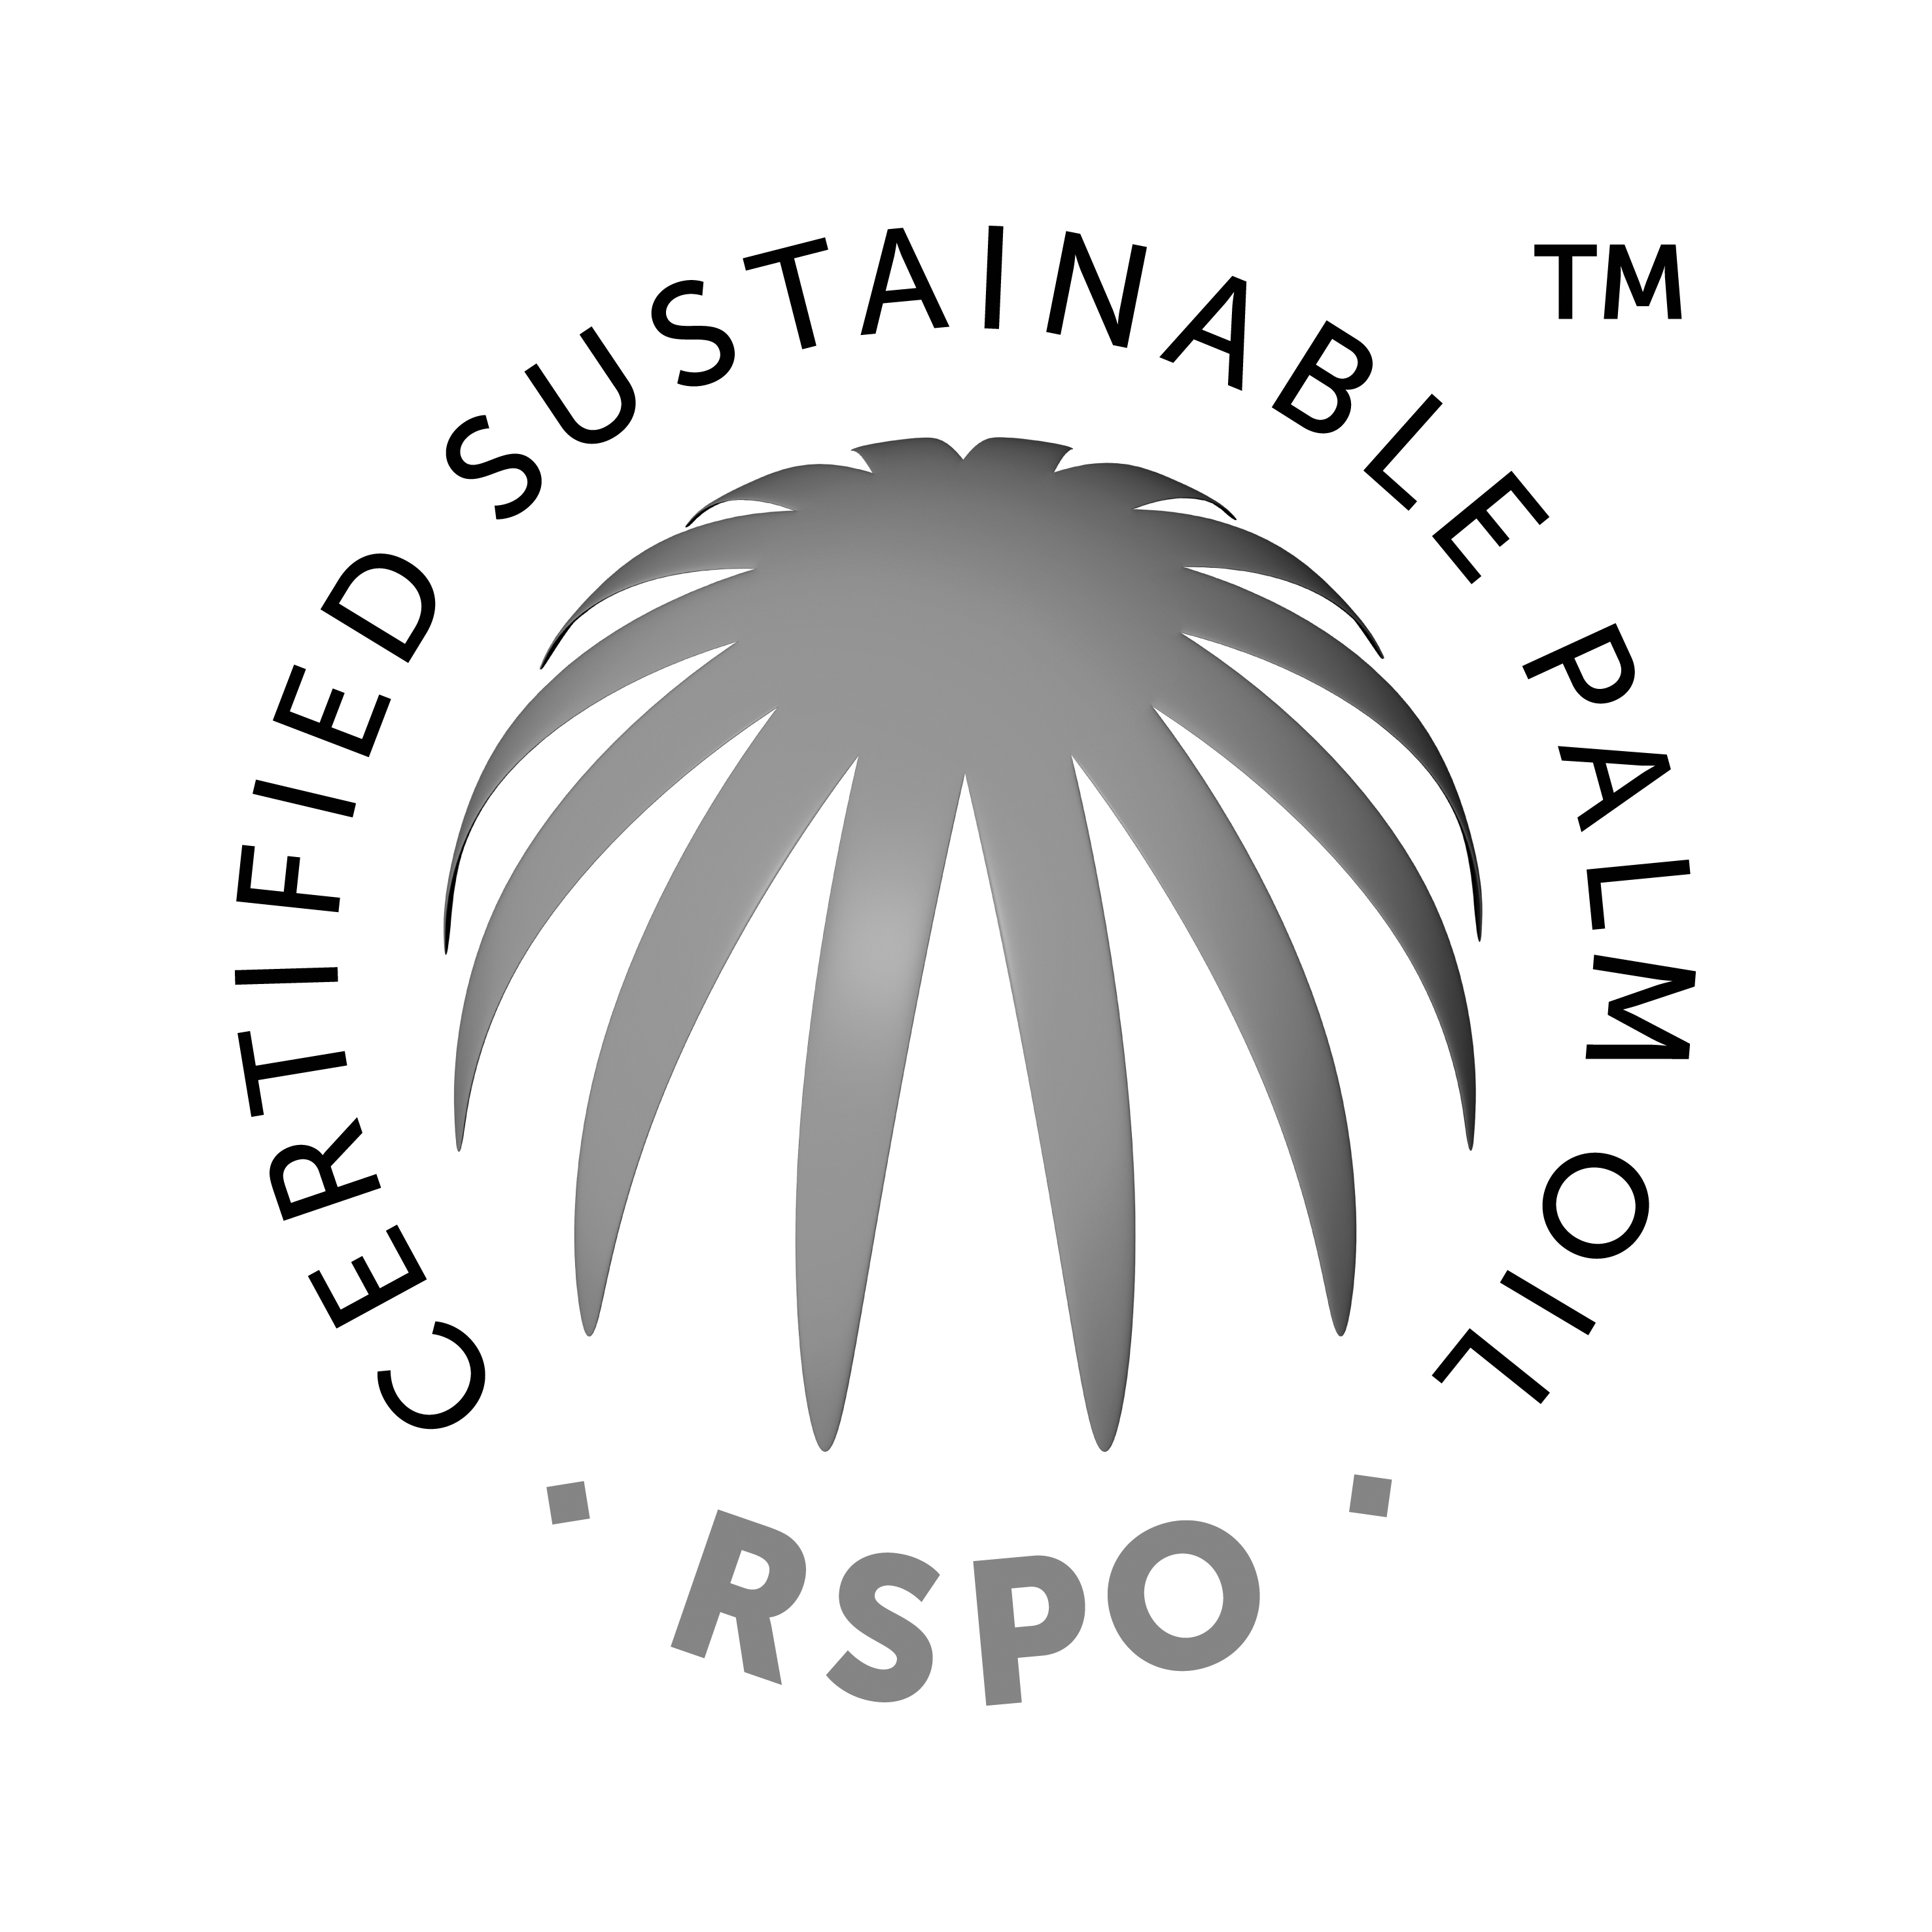 RSPO licentie nummer: 9-1443-16-100-00